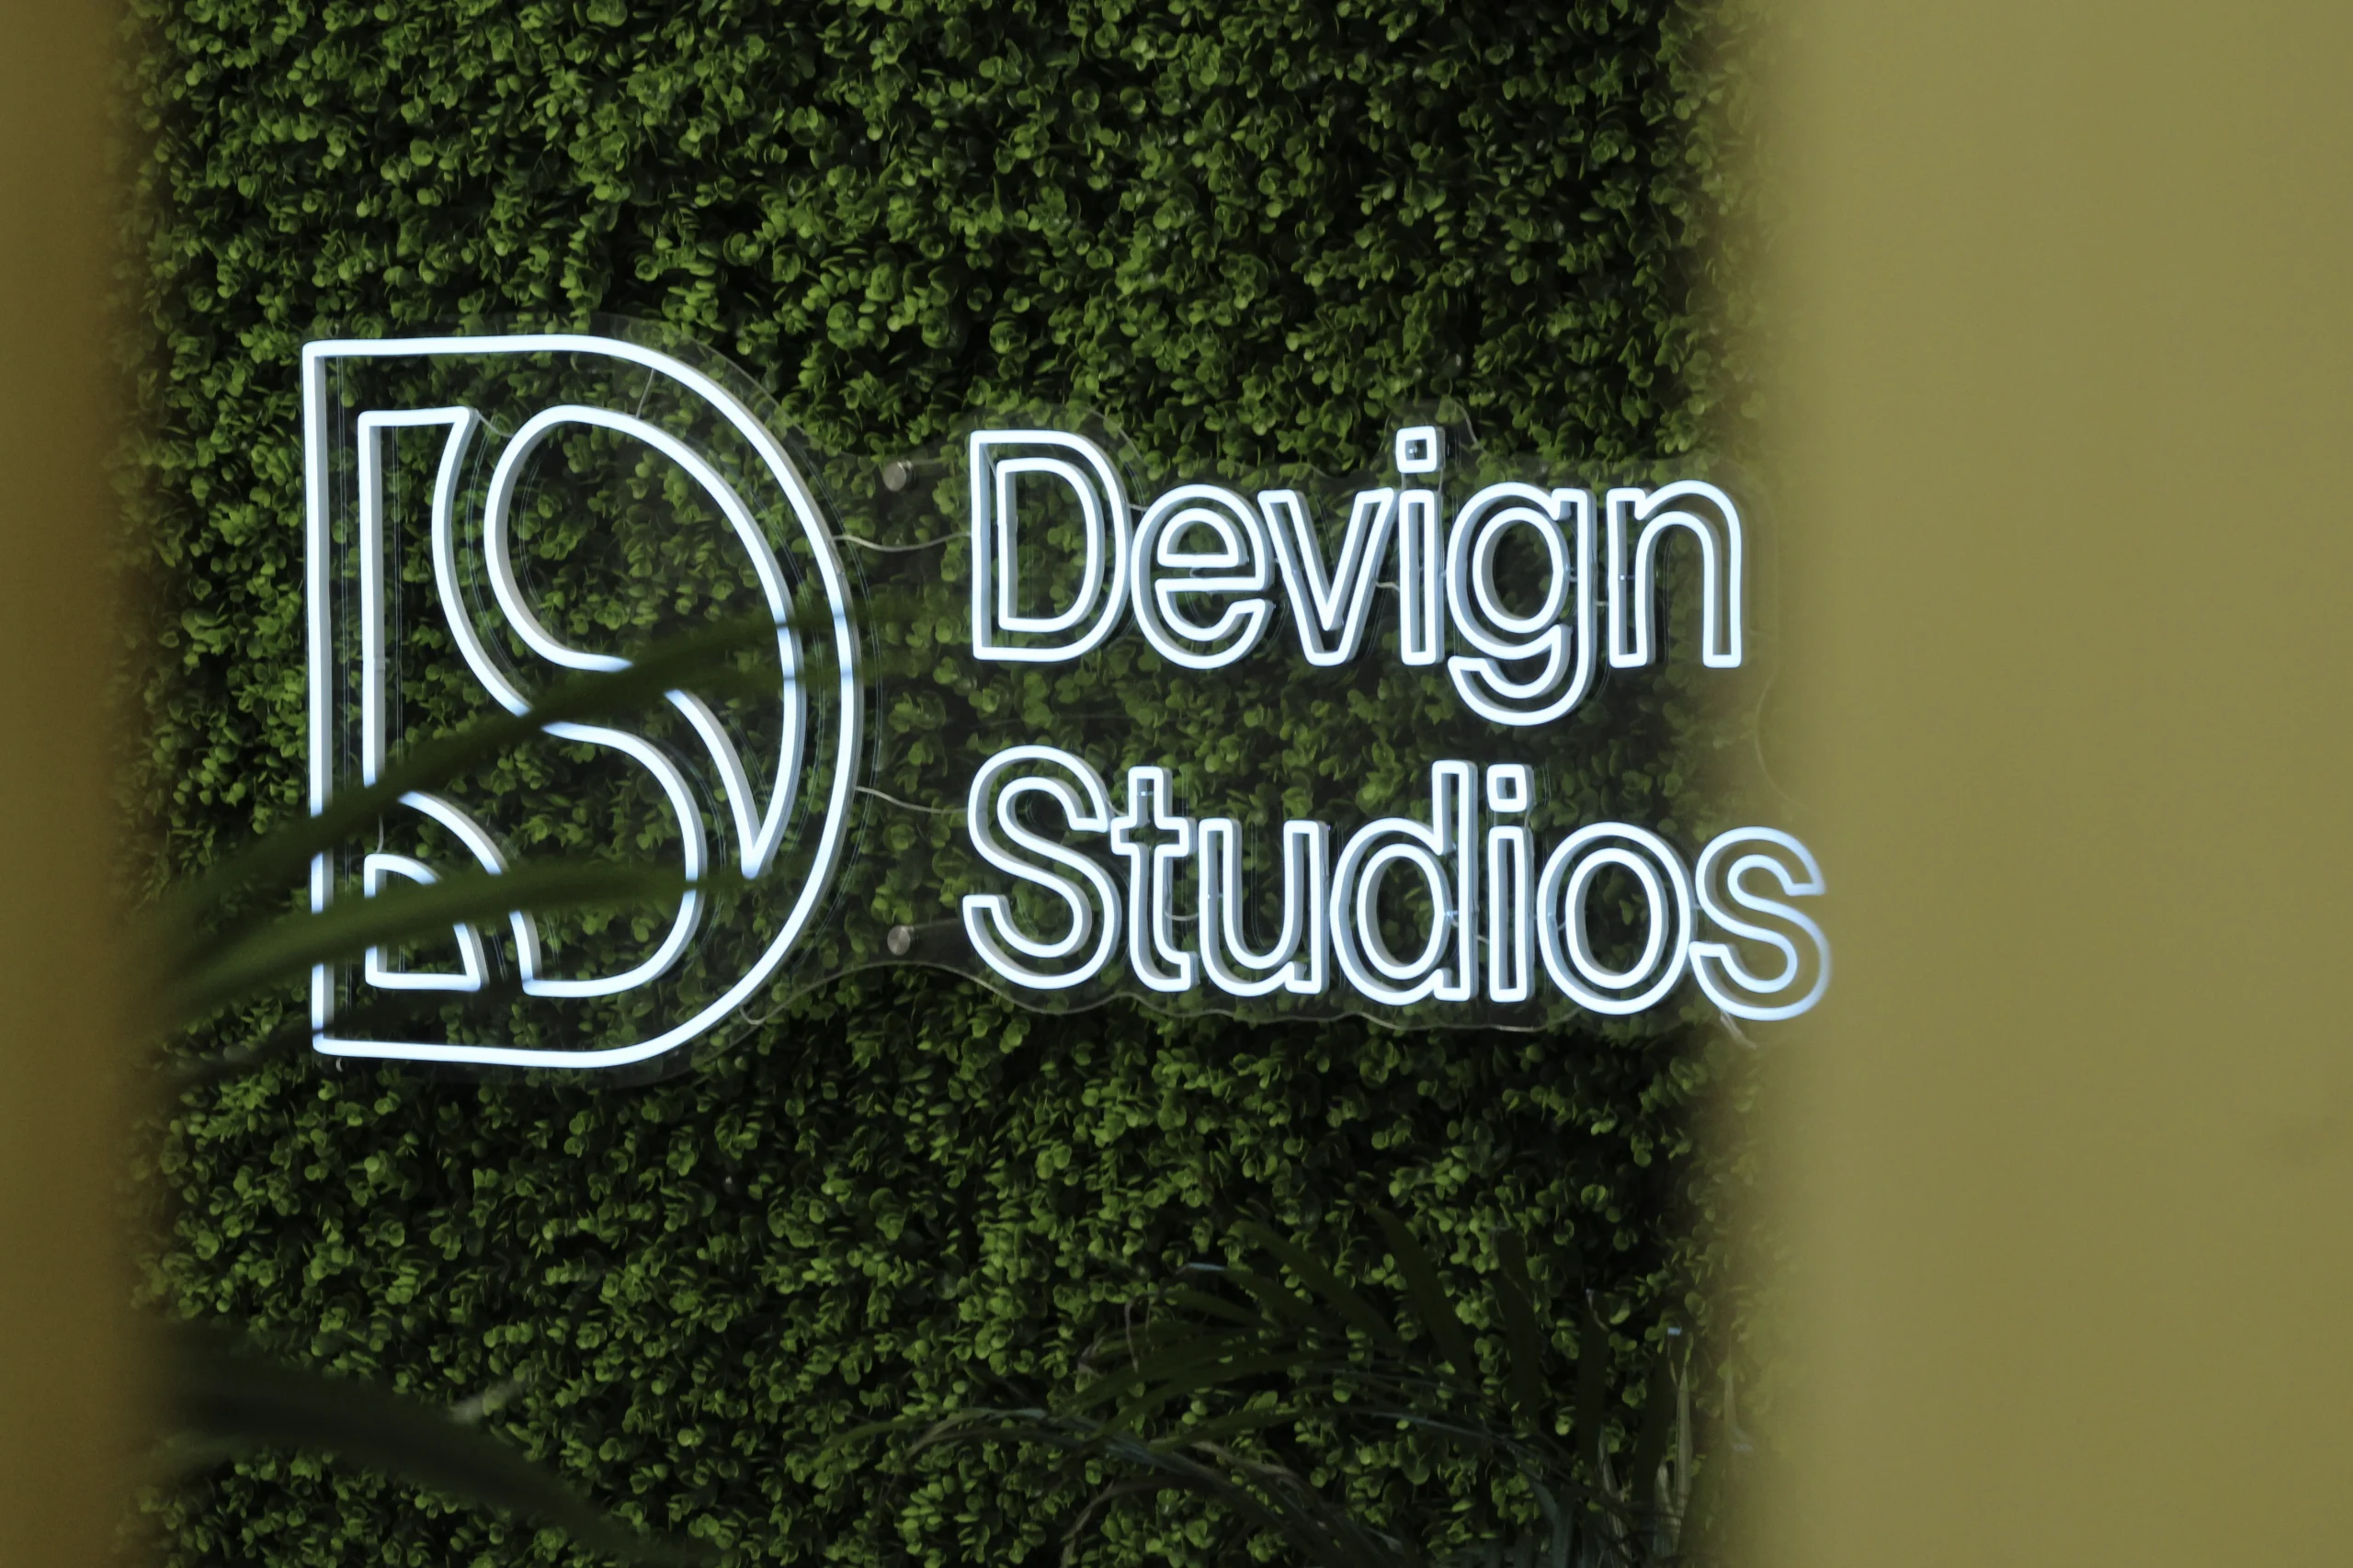 Devign Studios Signage